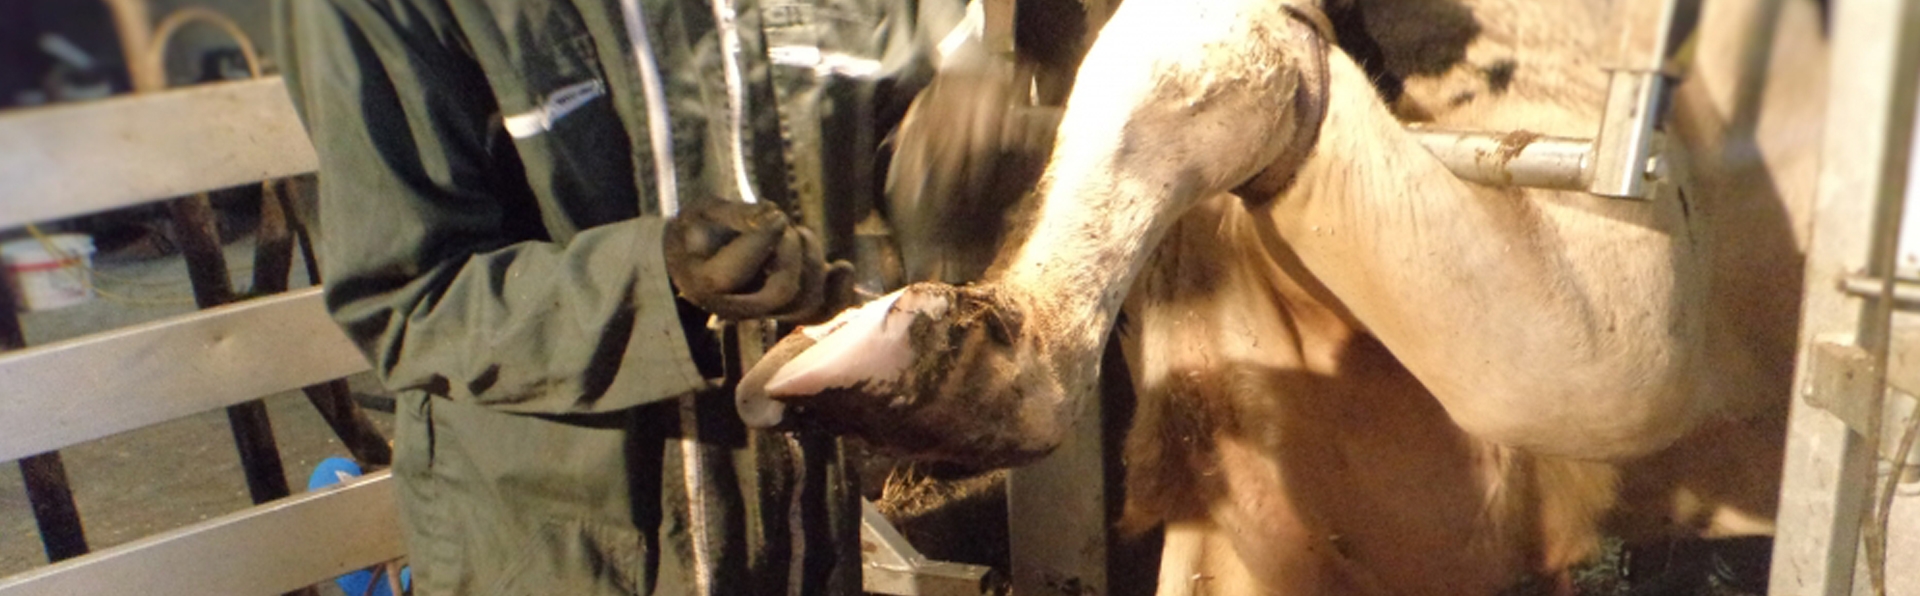 Vétérinaire s'occupant d'une vache